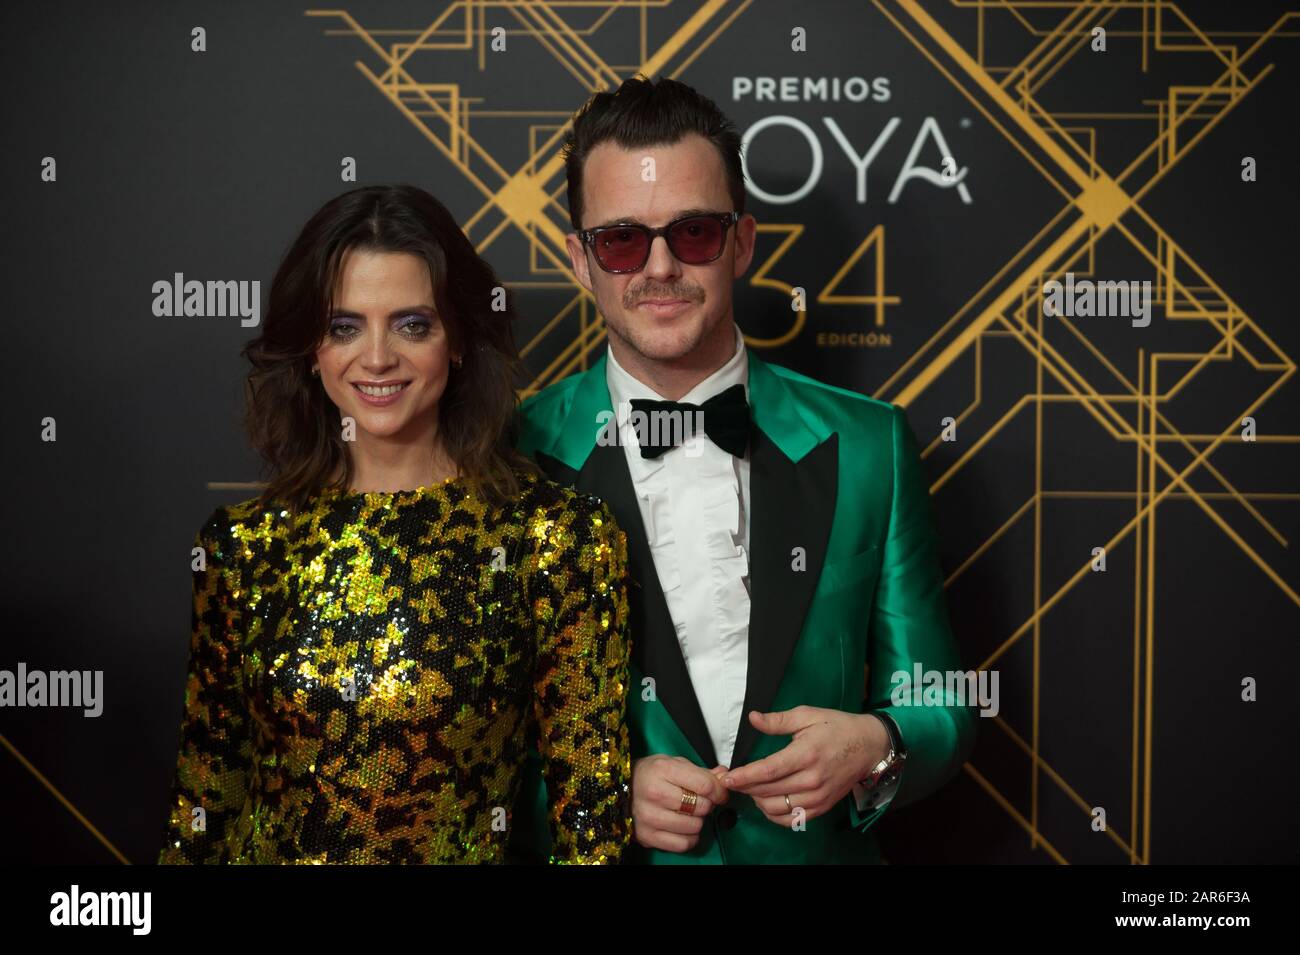 Schauspielerin Macarena Gomez und Auch Comas nehmen an der 34. Ausgabe der Goya Awards Zeremonie der spanischen Filmakademie im Sportpalast Jose Maria Martin Carpena Teil. Stockfoto